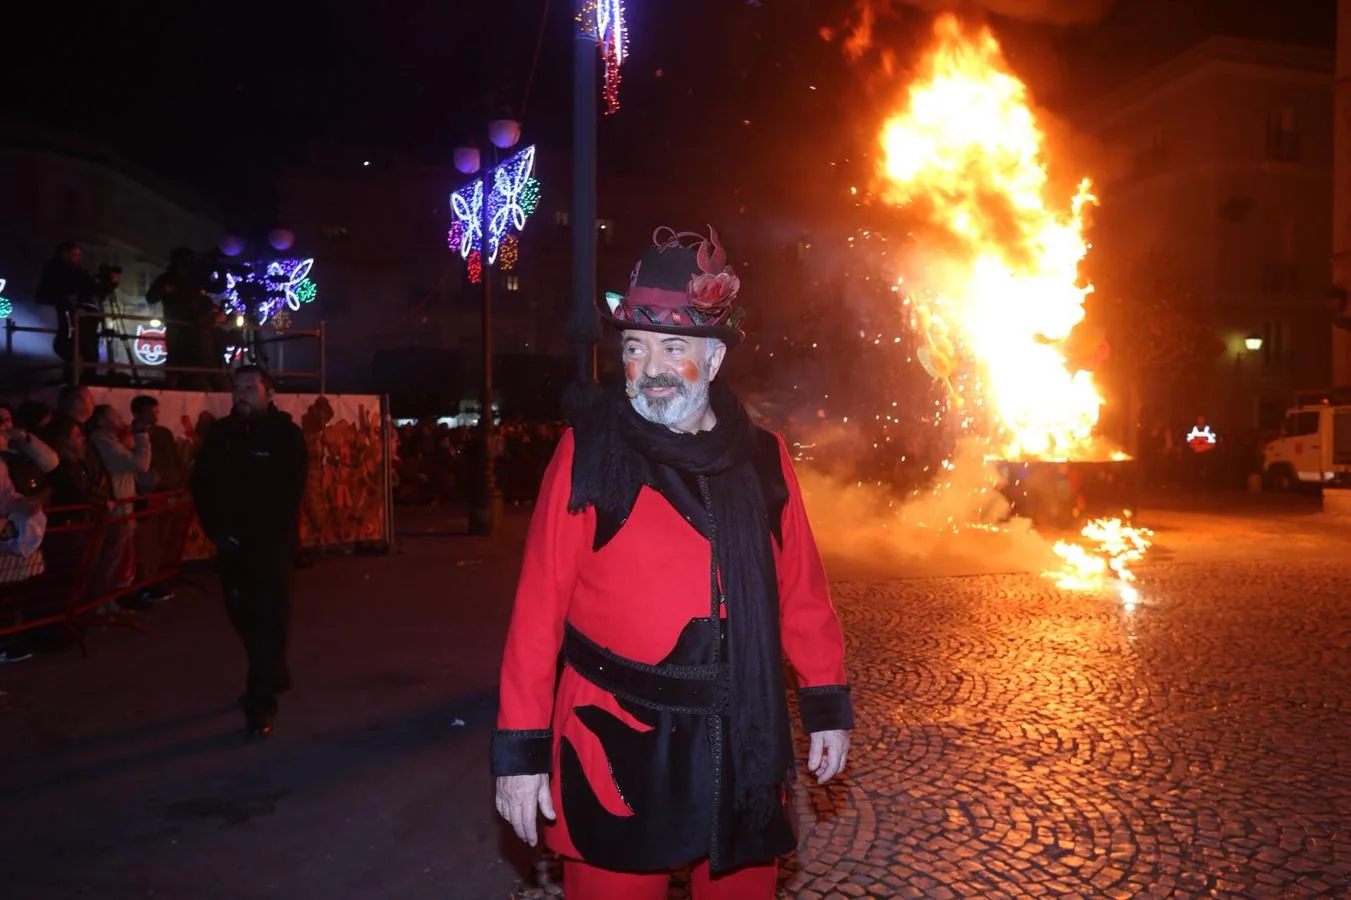 FOTOS: El Dios Momo arde en San Antonio